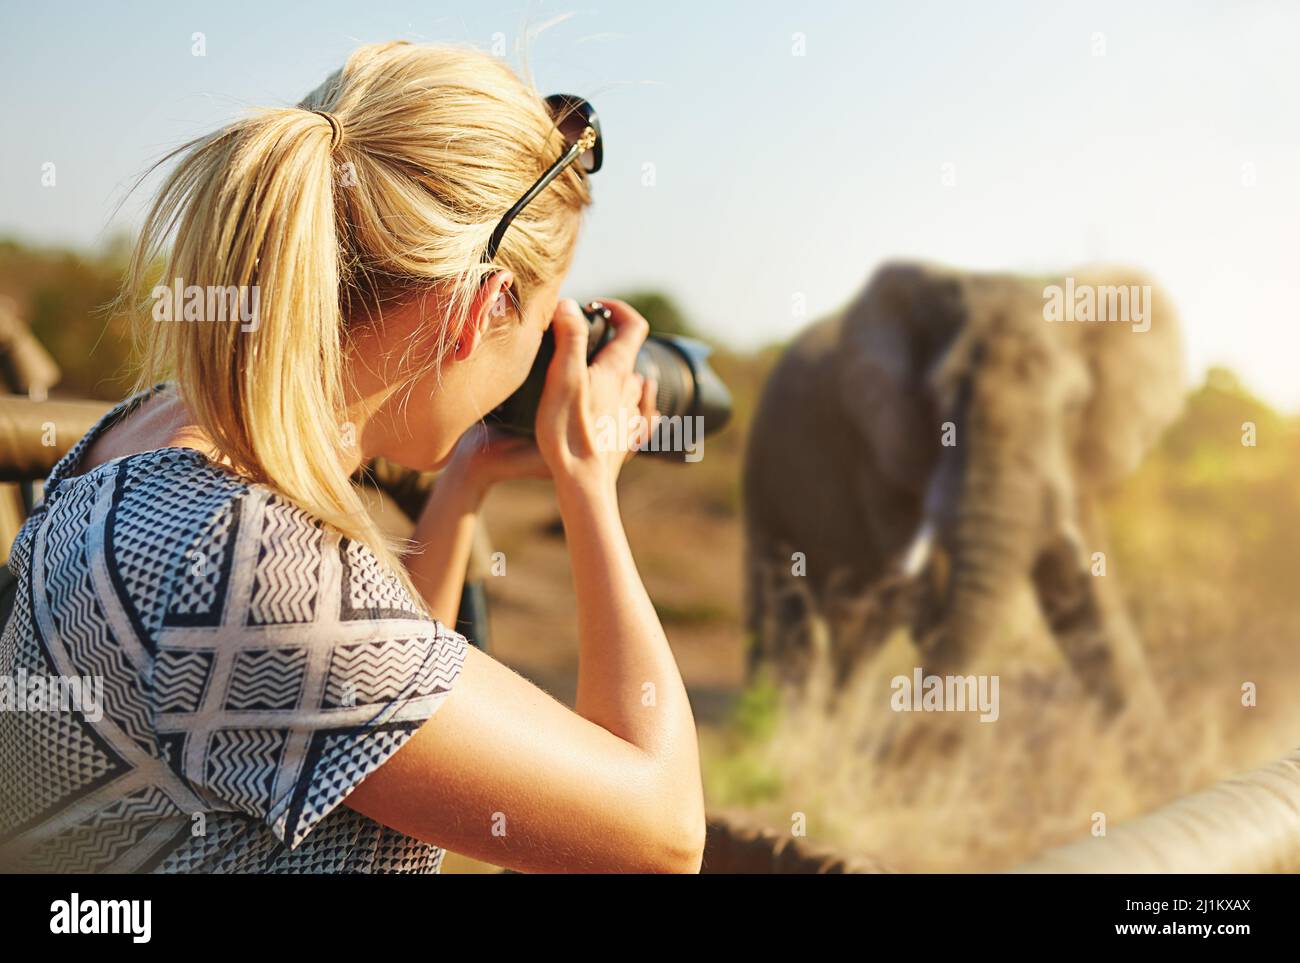 Catturare la fauna selvatica. Scatto ritagliato di una femmina turistica che scatta fotografie di elefanti durante il safari. Foto Stock